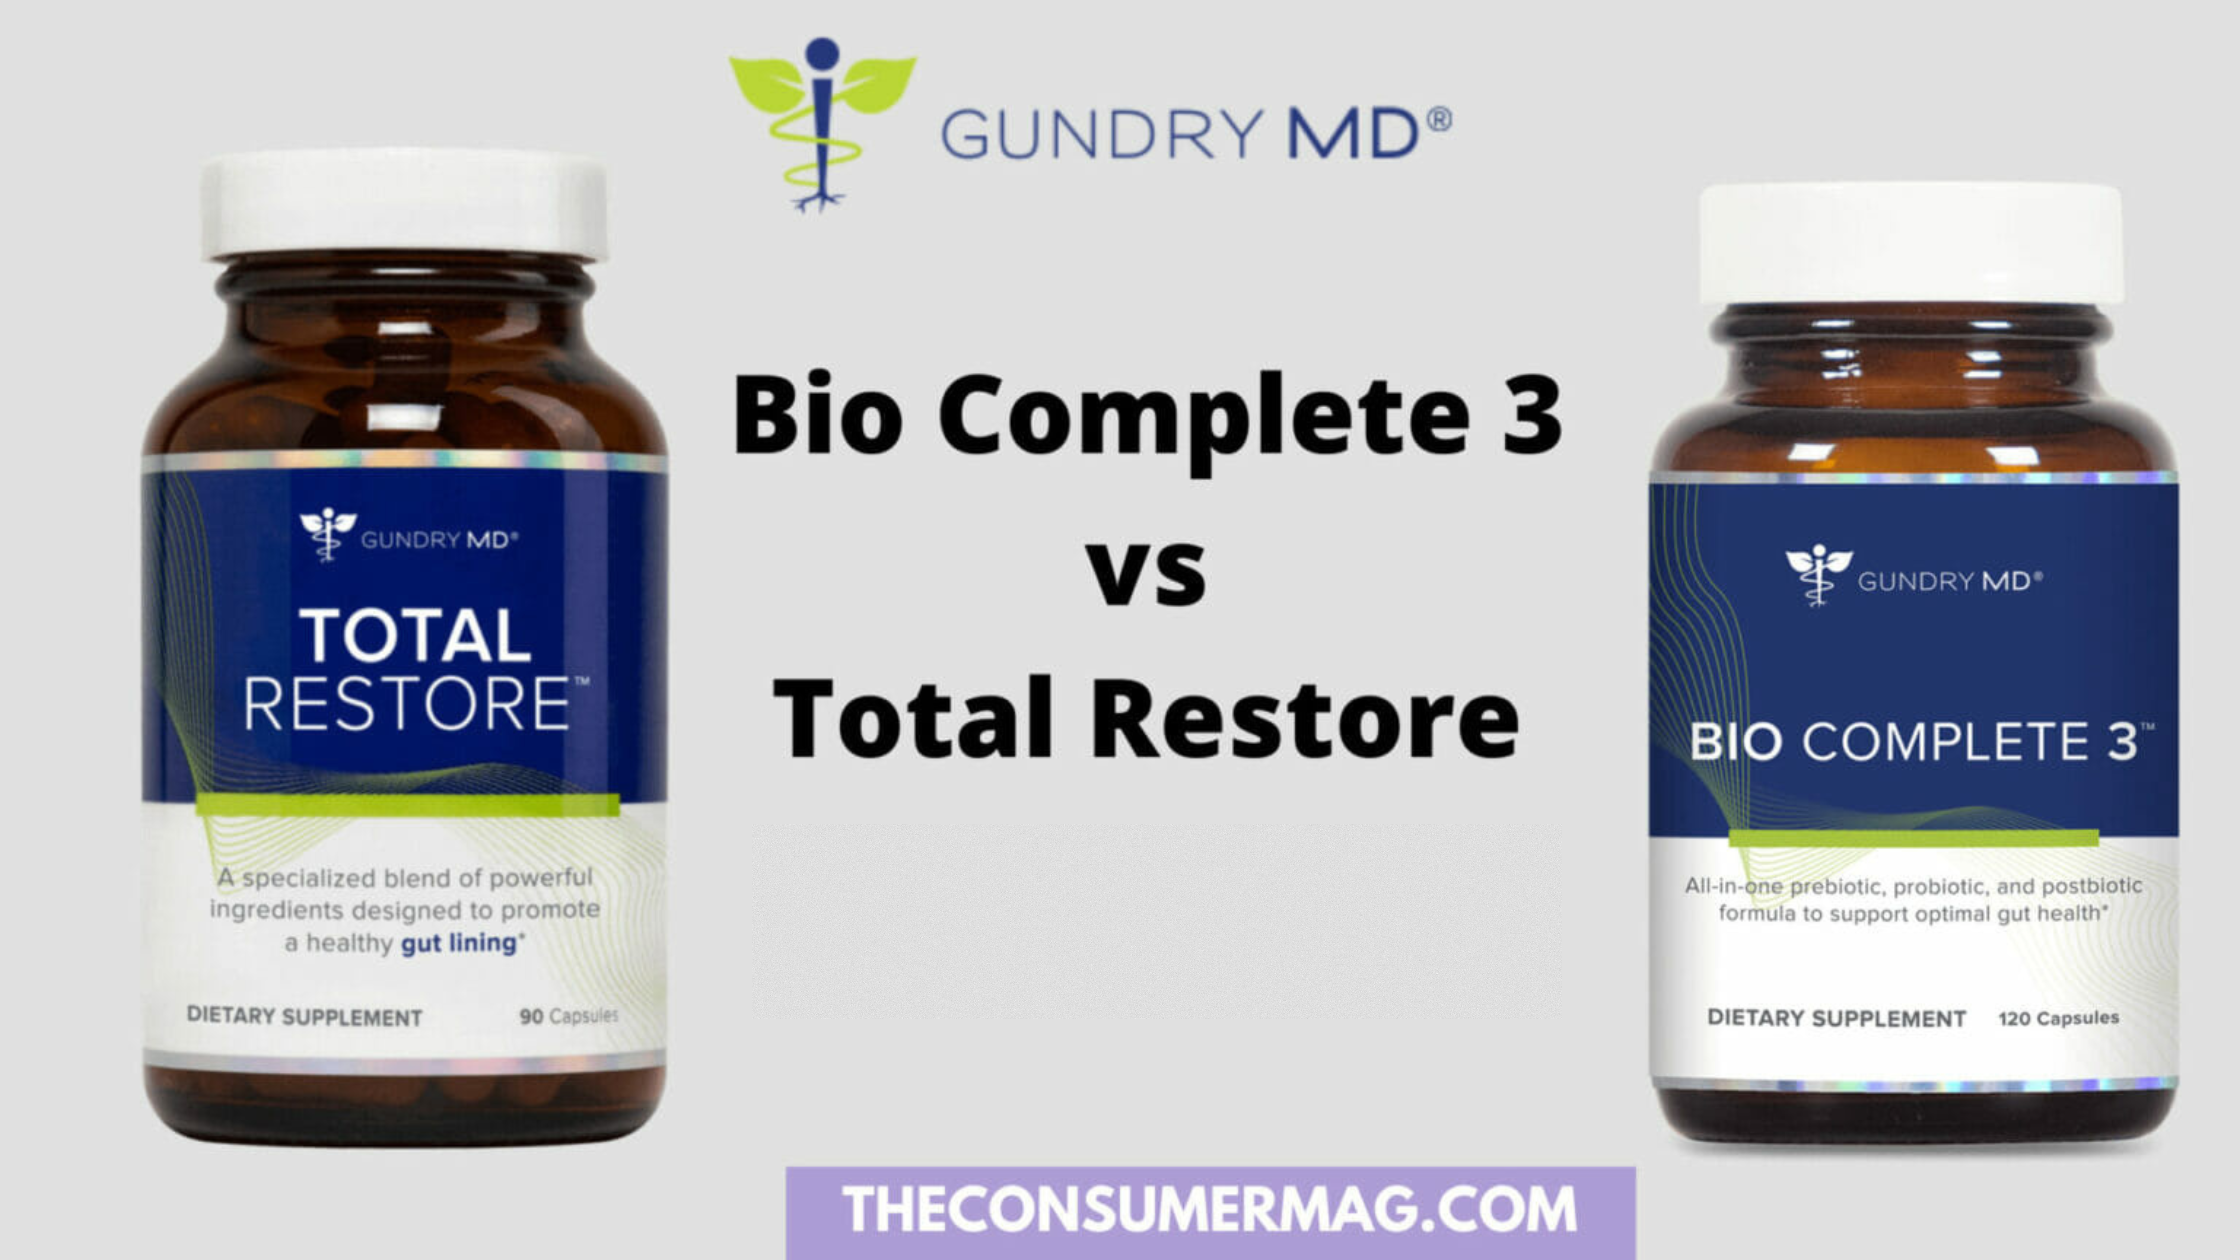 Bio Complete 3 Vs Total Restore featured image